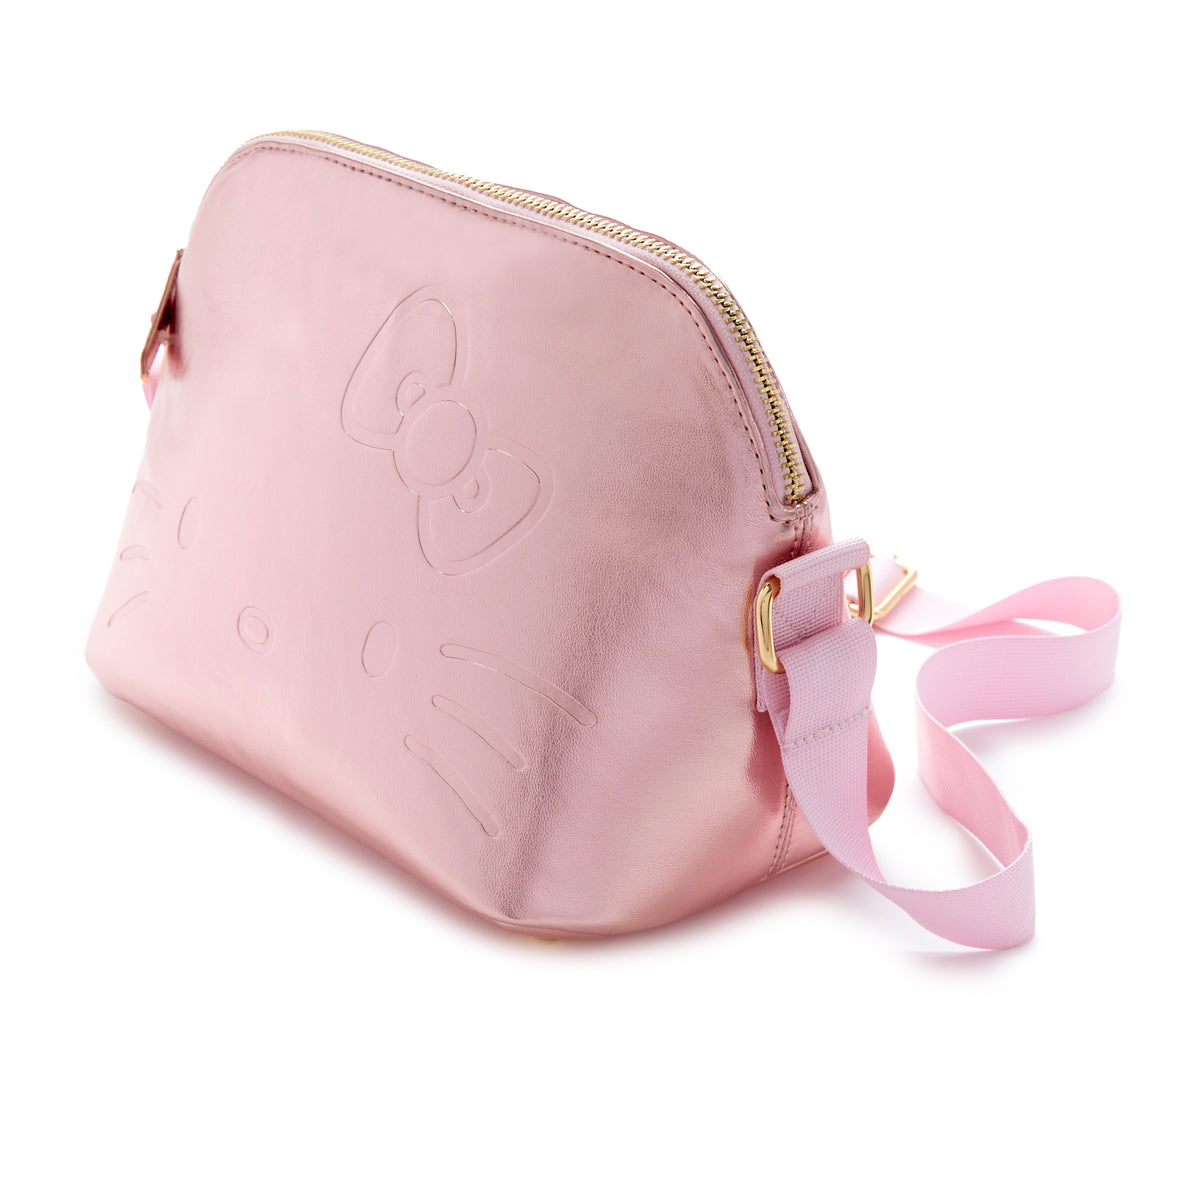 Hello Kitty x Igloo Luxe Crossbody Bag